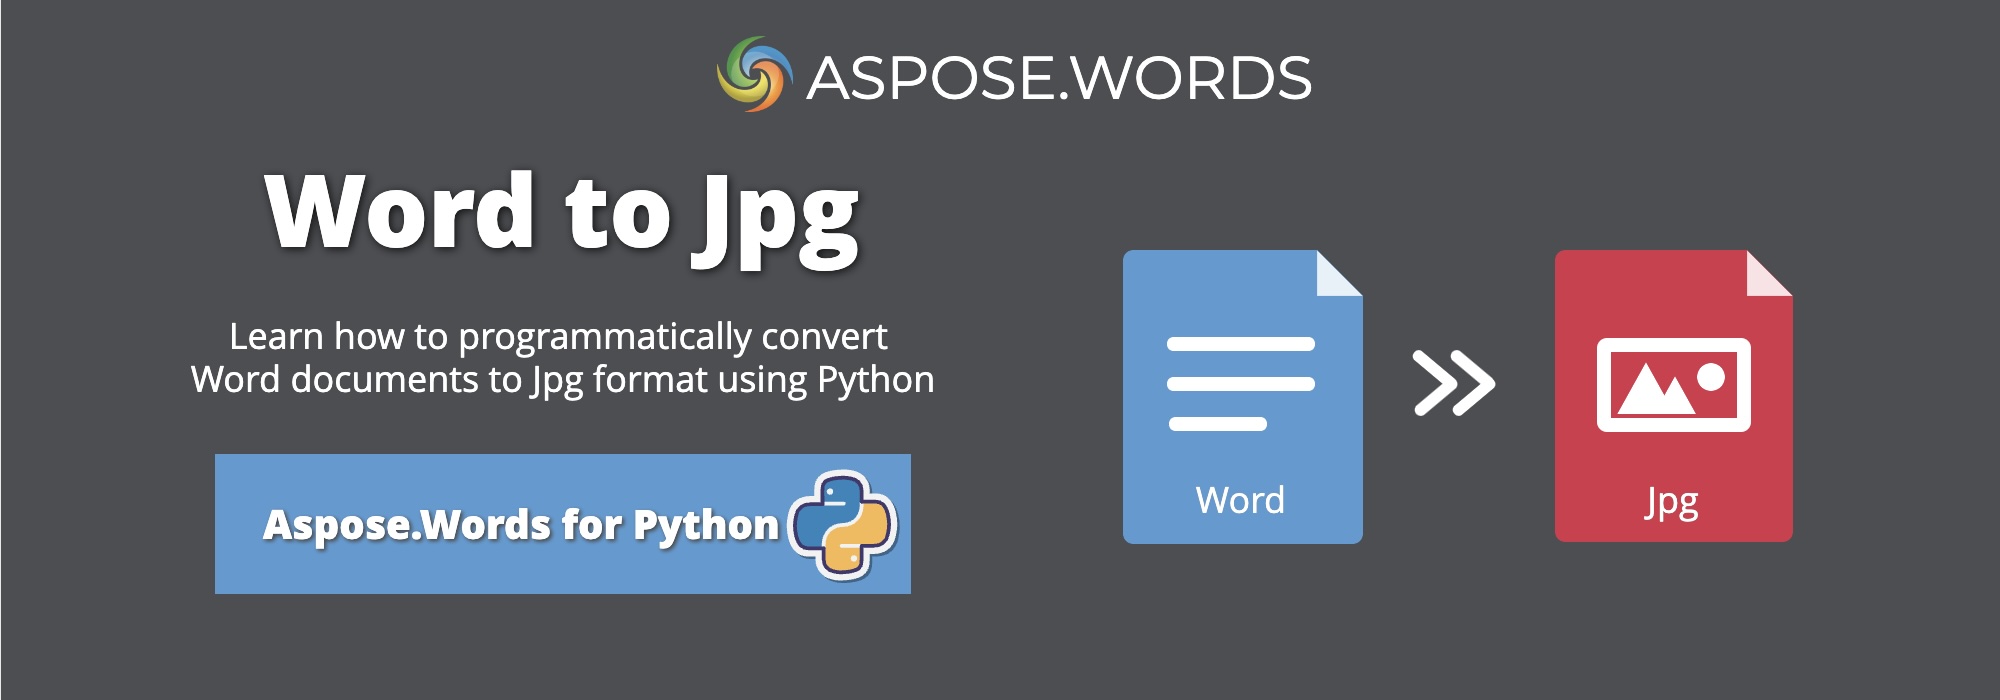 تبدیل Word به JPG Python | تبدیل DOCX به JPG Python